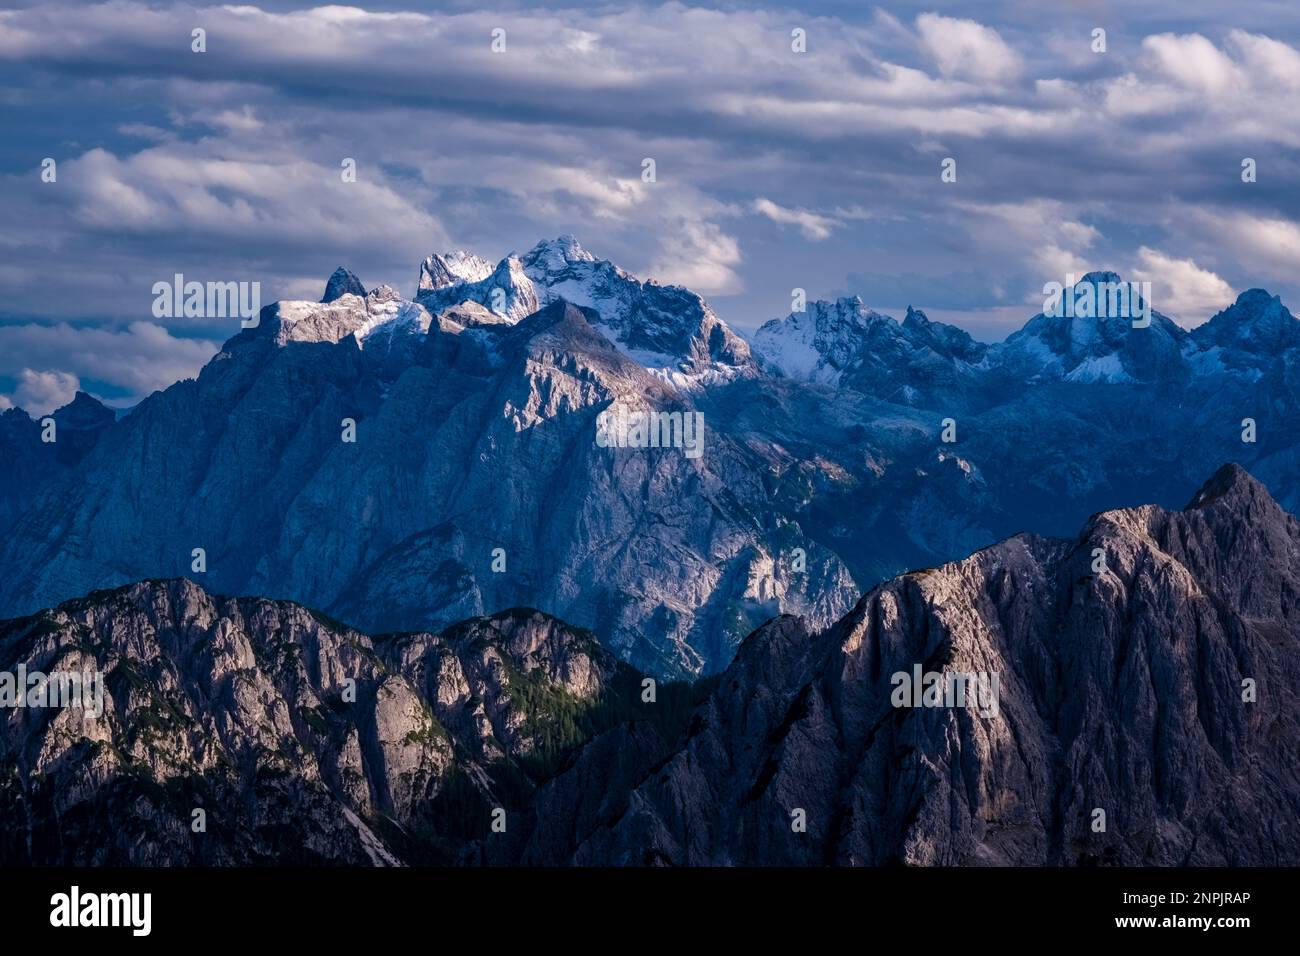 La cima del monte Cimon del Froppa, la vetta più alta della catena delle Marmarole, vista da Paternscharte. Foto Stock